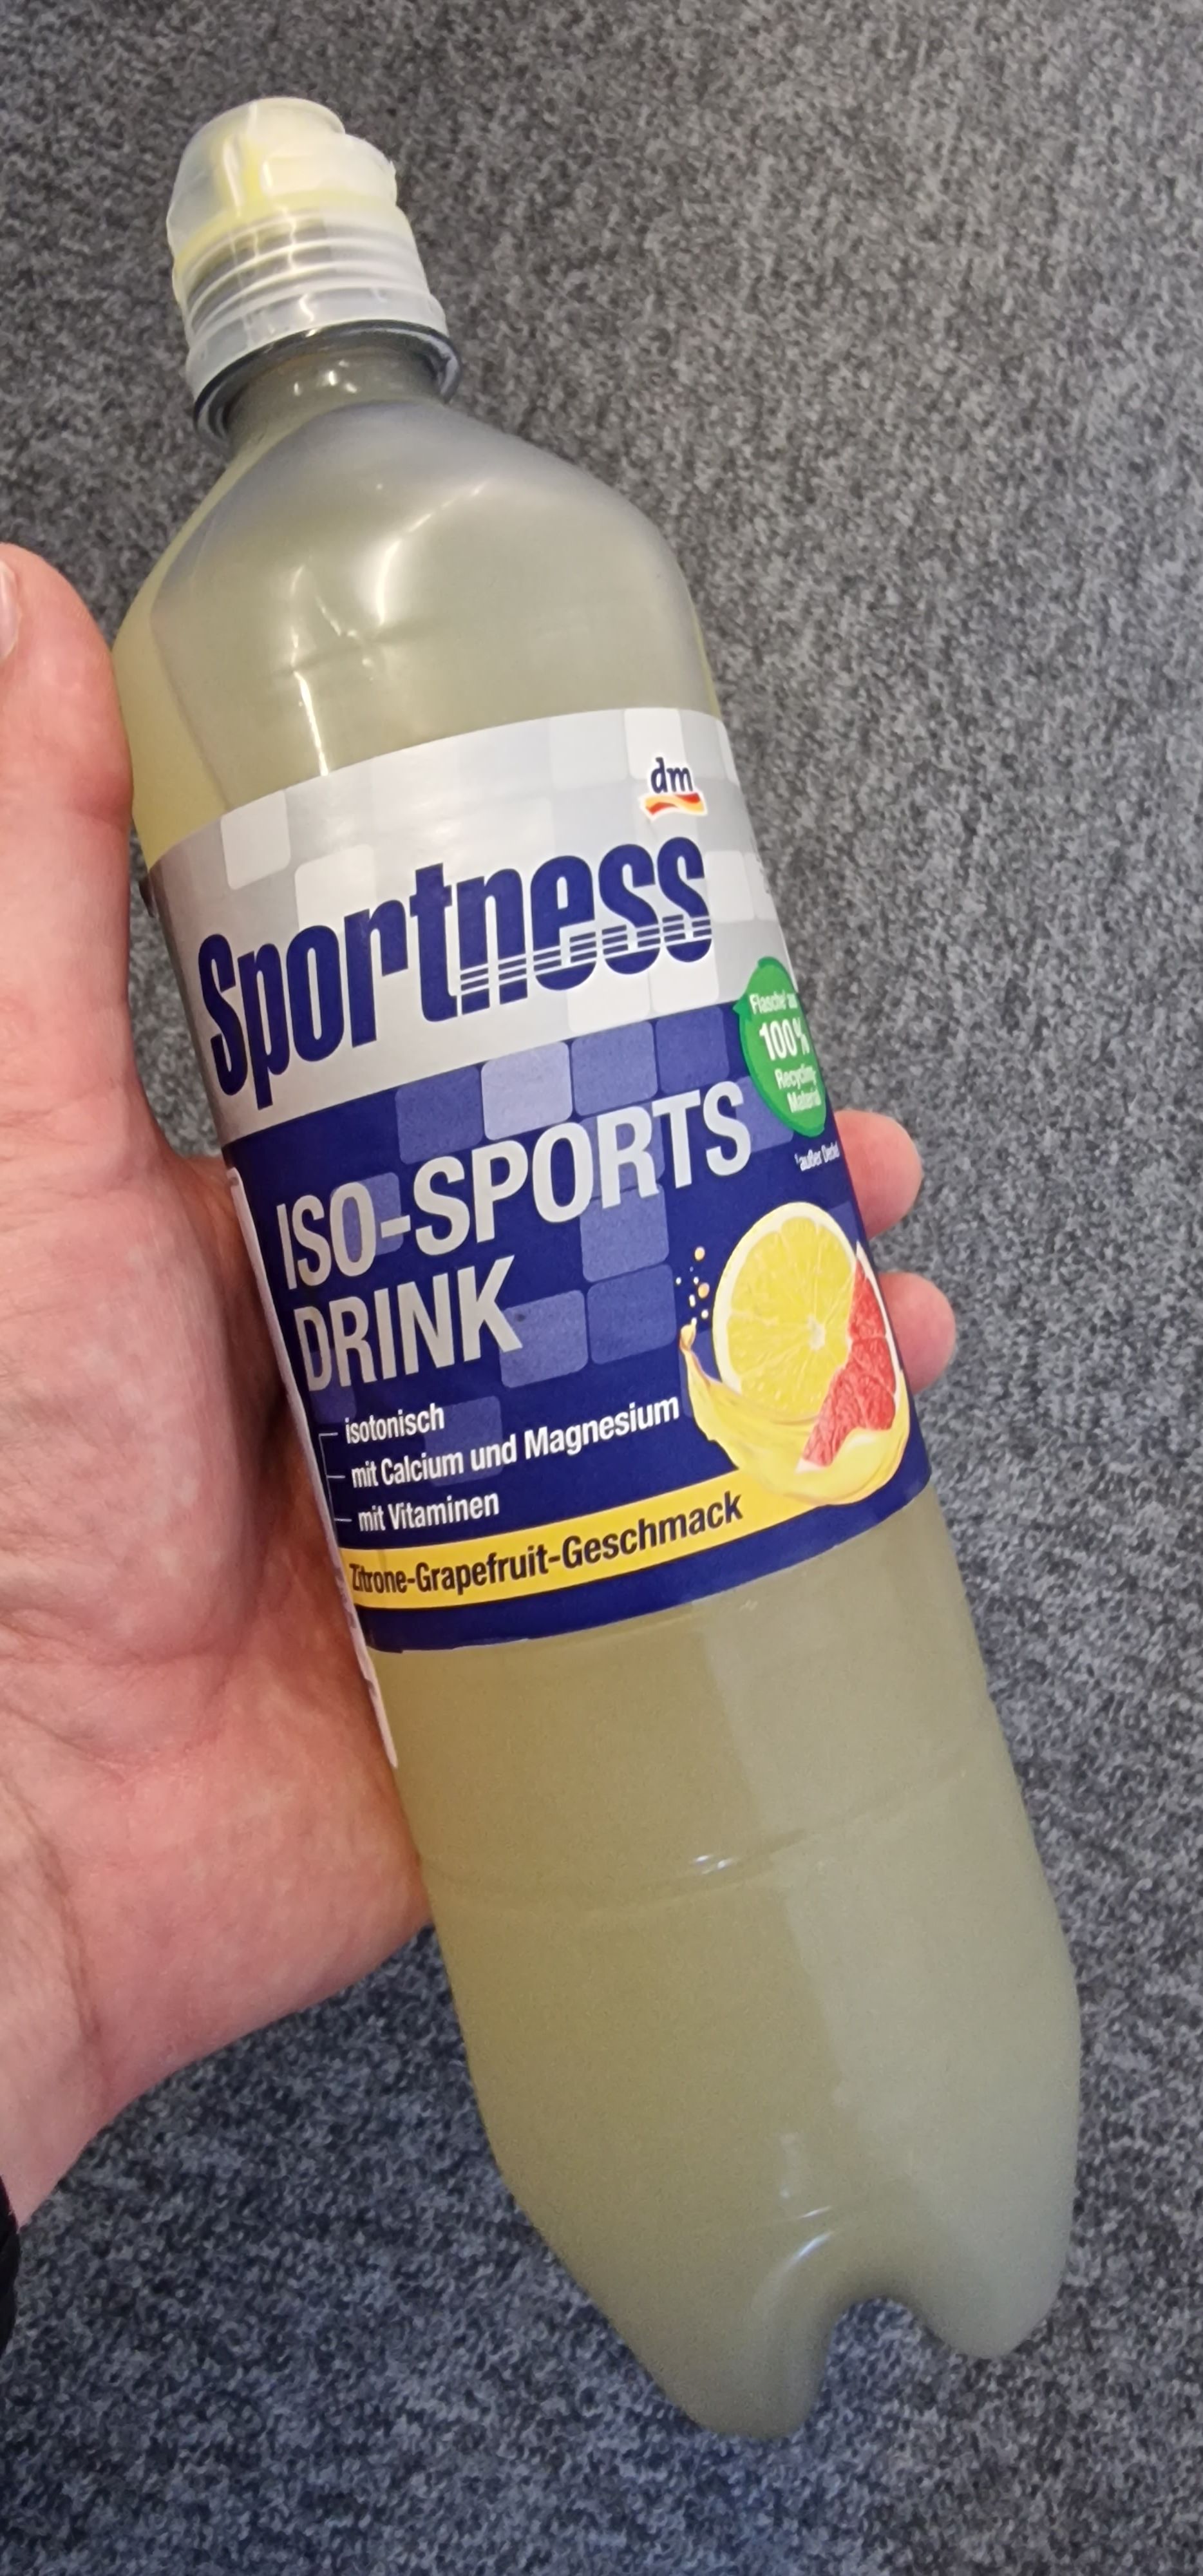 Sportness ISO-SPORTS DRINK